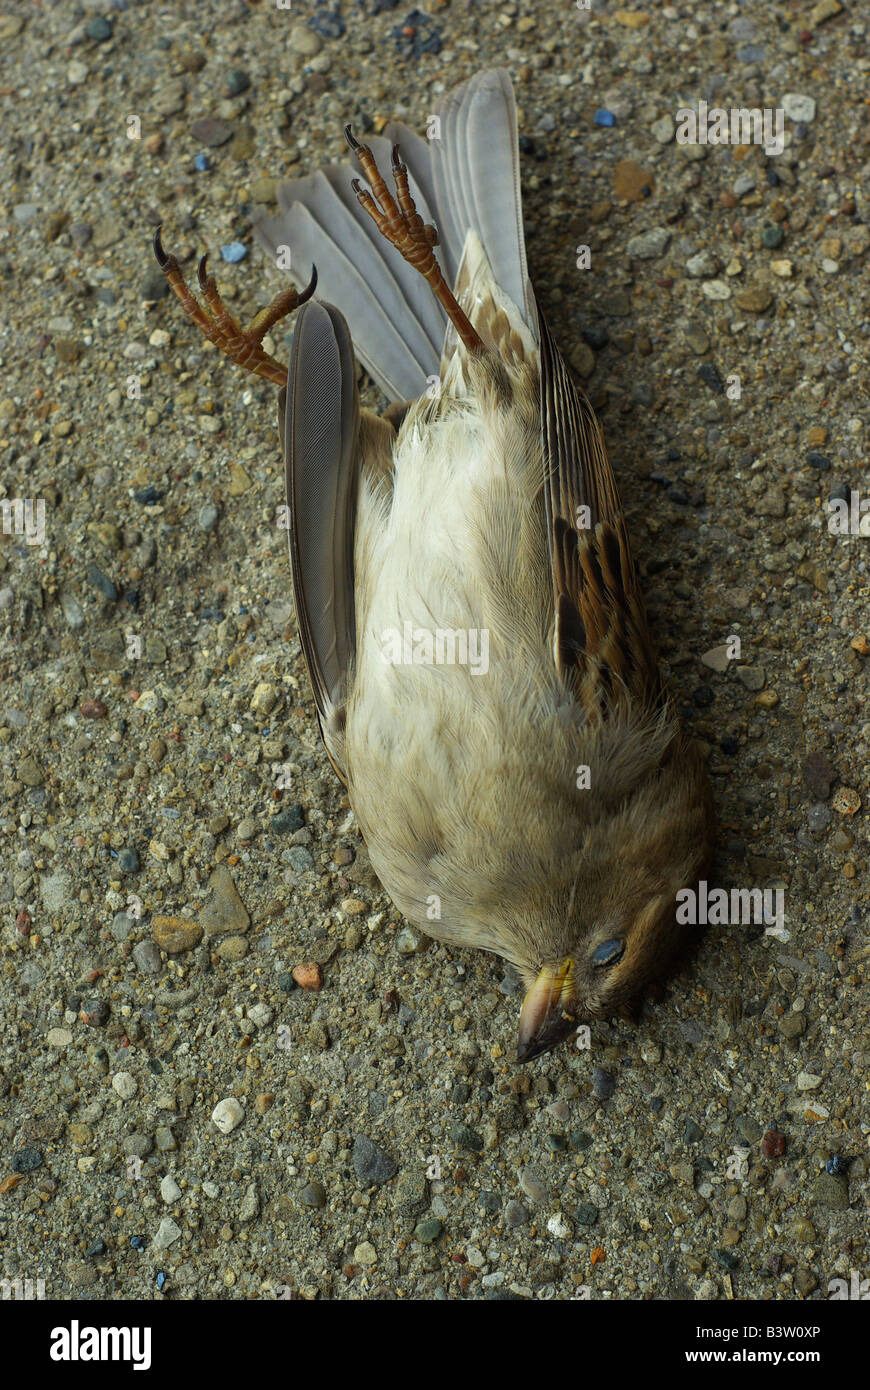 A dead sparrow lay peacefully on the sidewalk. Stock Photo